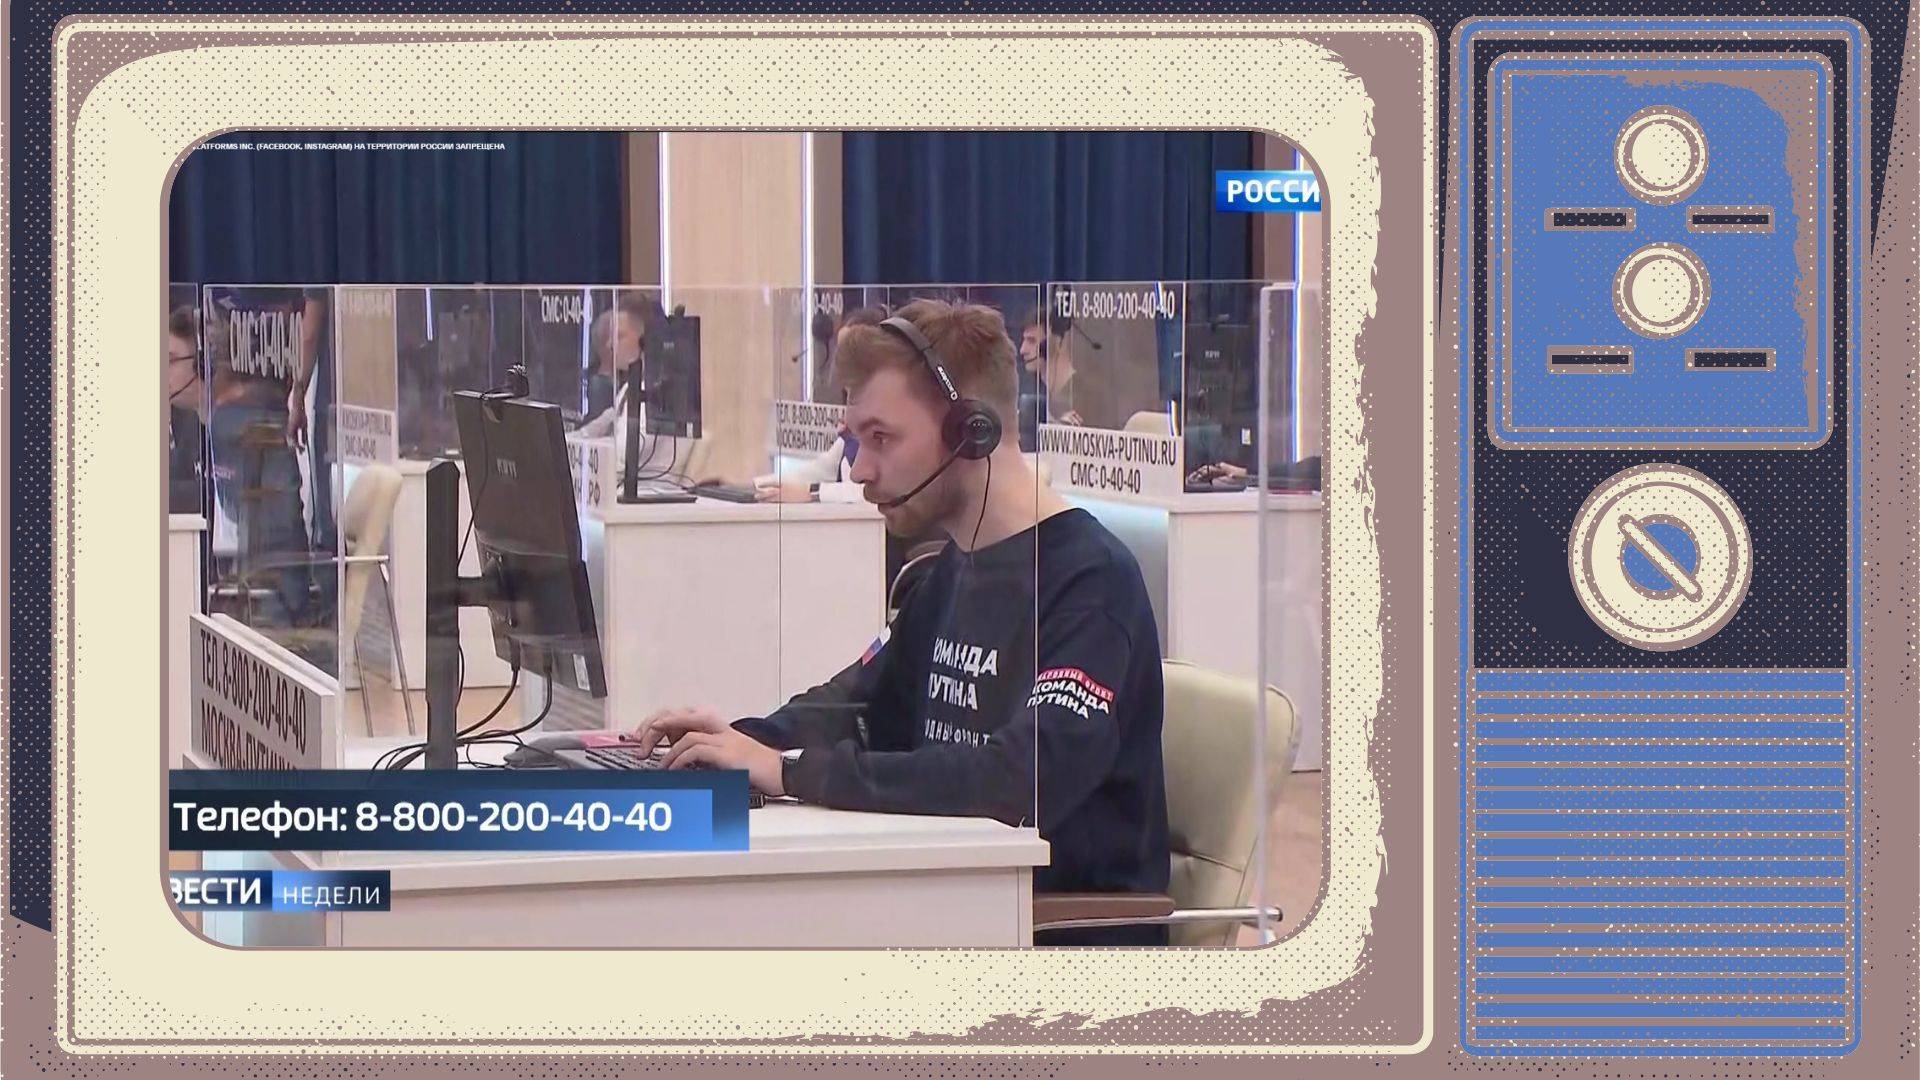 Grafika. W ramce starego telewizora zdjęcie pracownika call center rejestrującego pytania do Putina